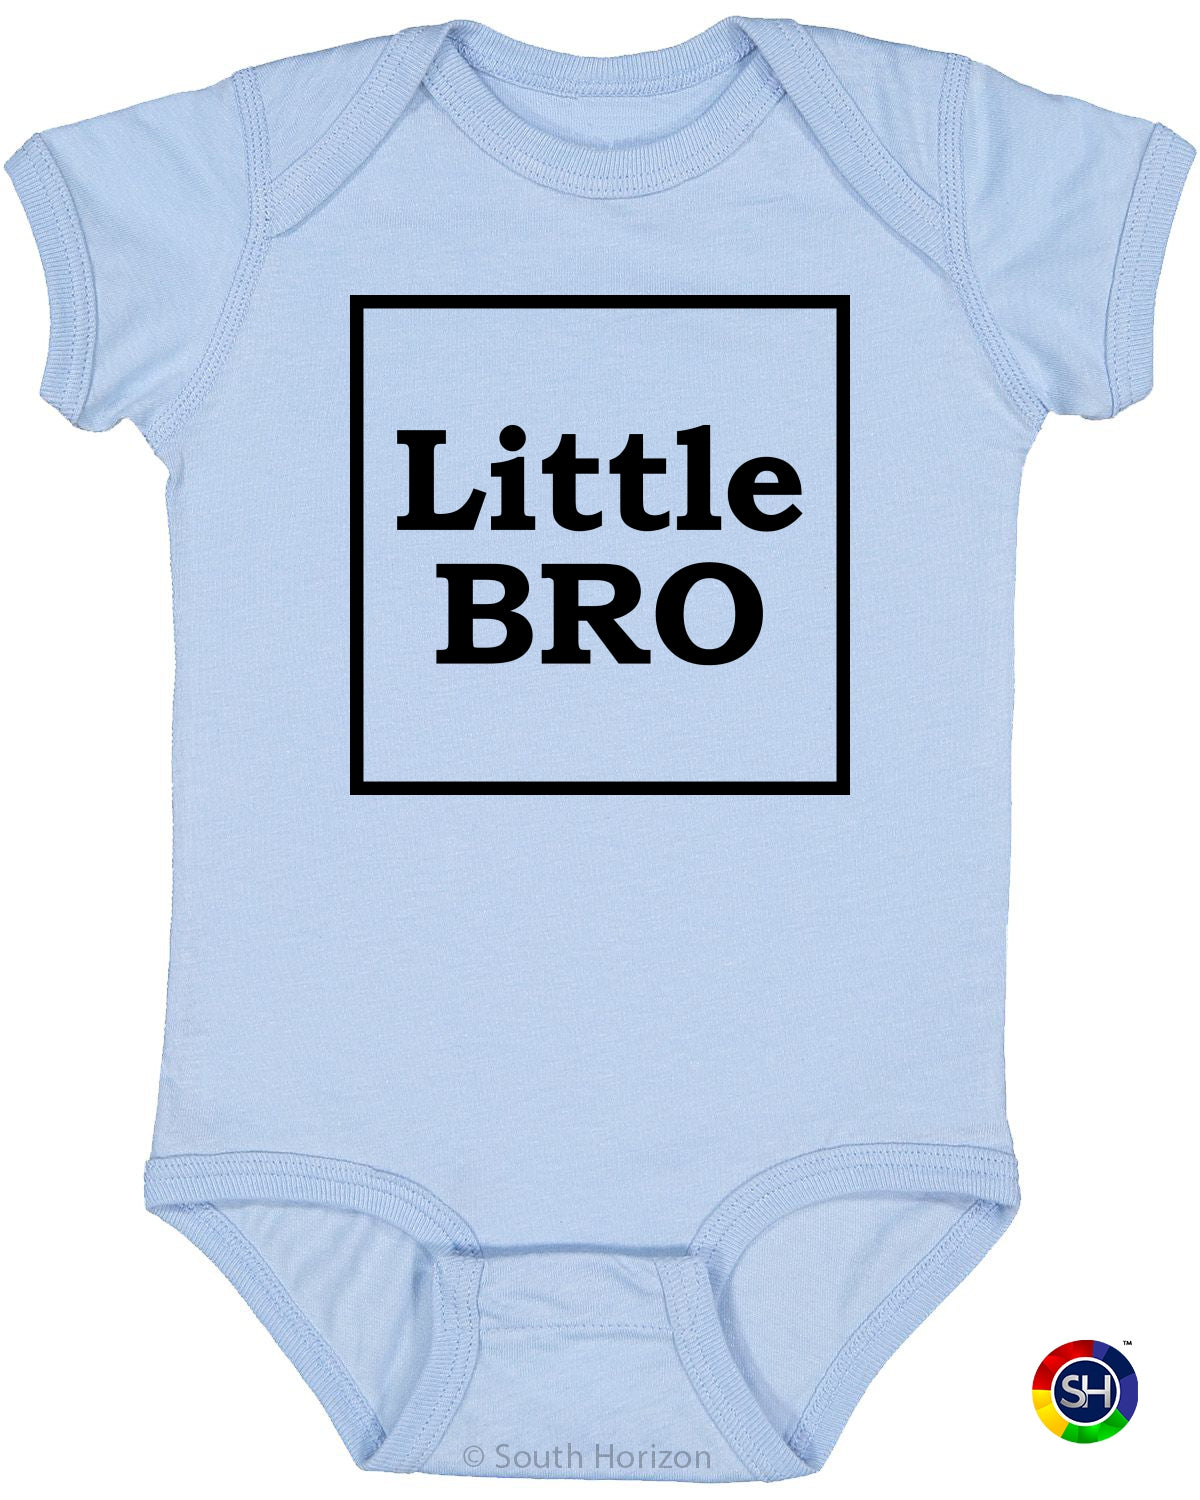 Little Bro on Infant BodySuit (#1247-10)